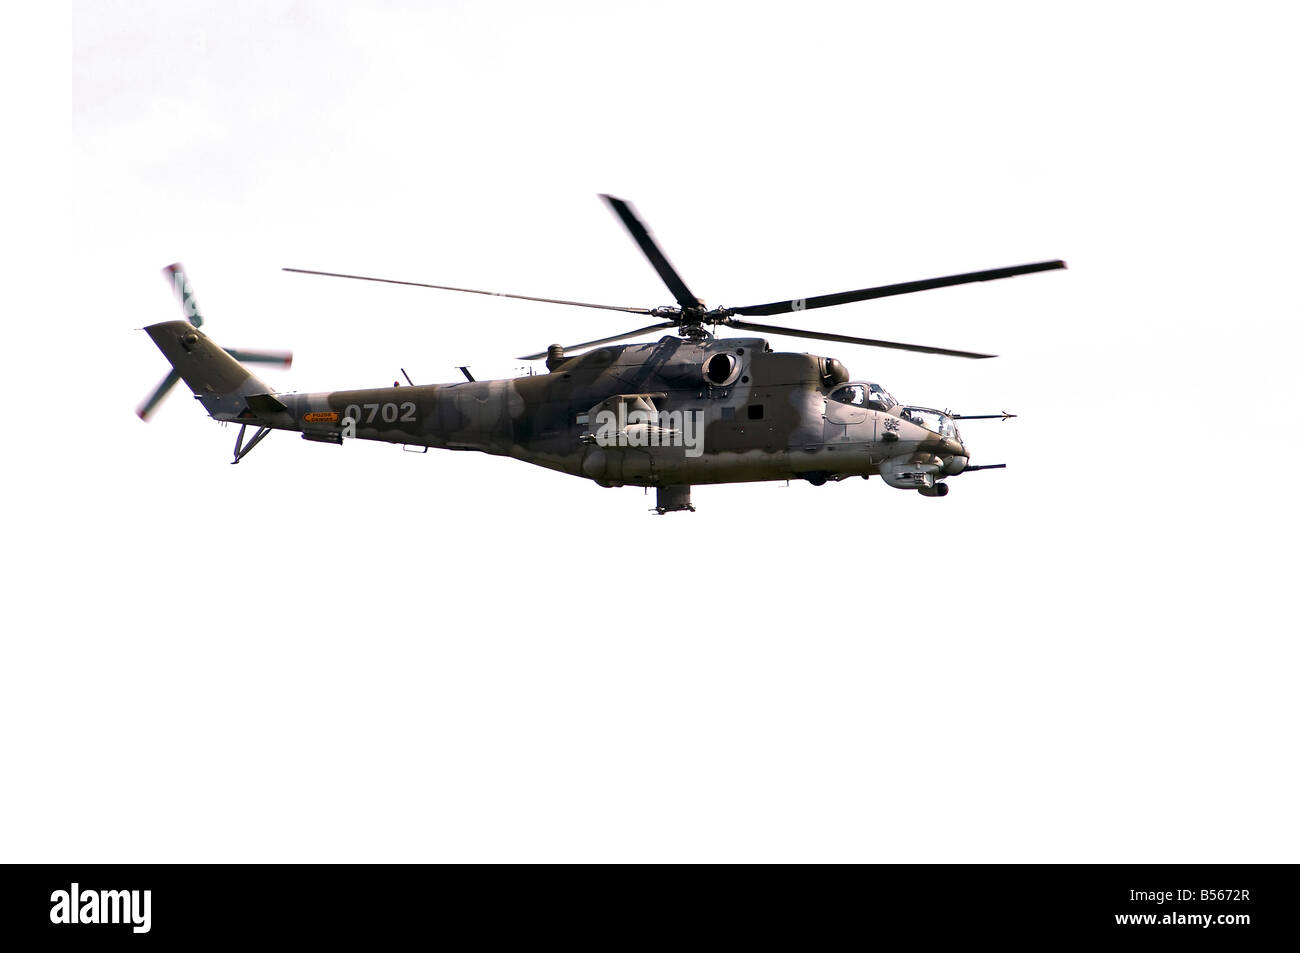 Colpo di volare in elicottero d'assalto - gunship - forze armate - armamento aereo - modello di elicottero mi24V / mi35 Foto Stock